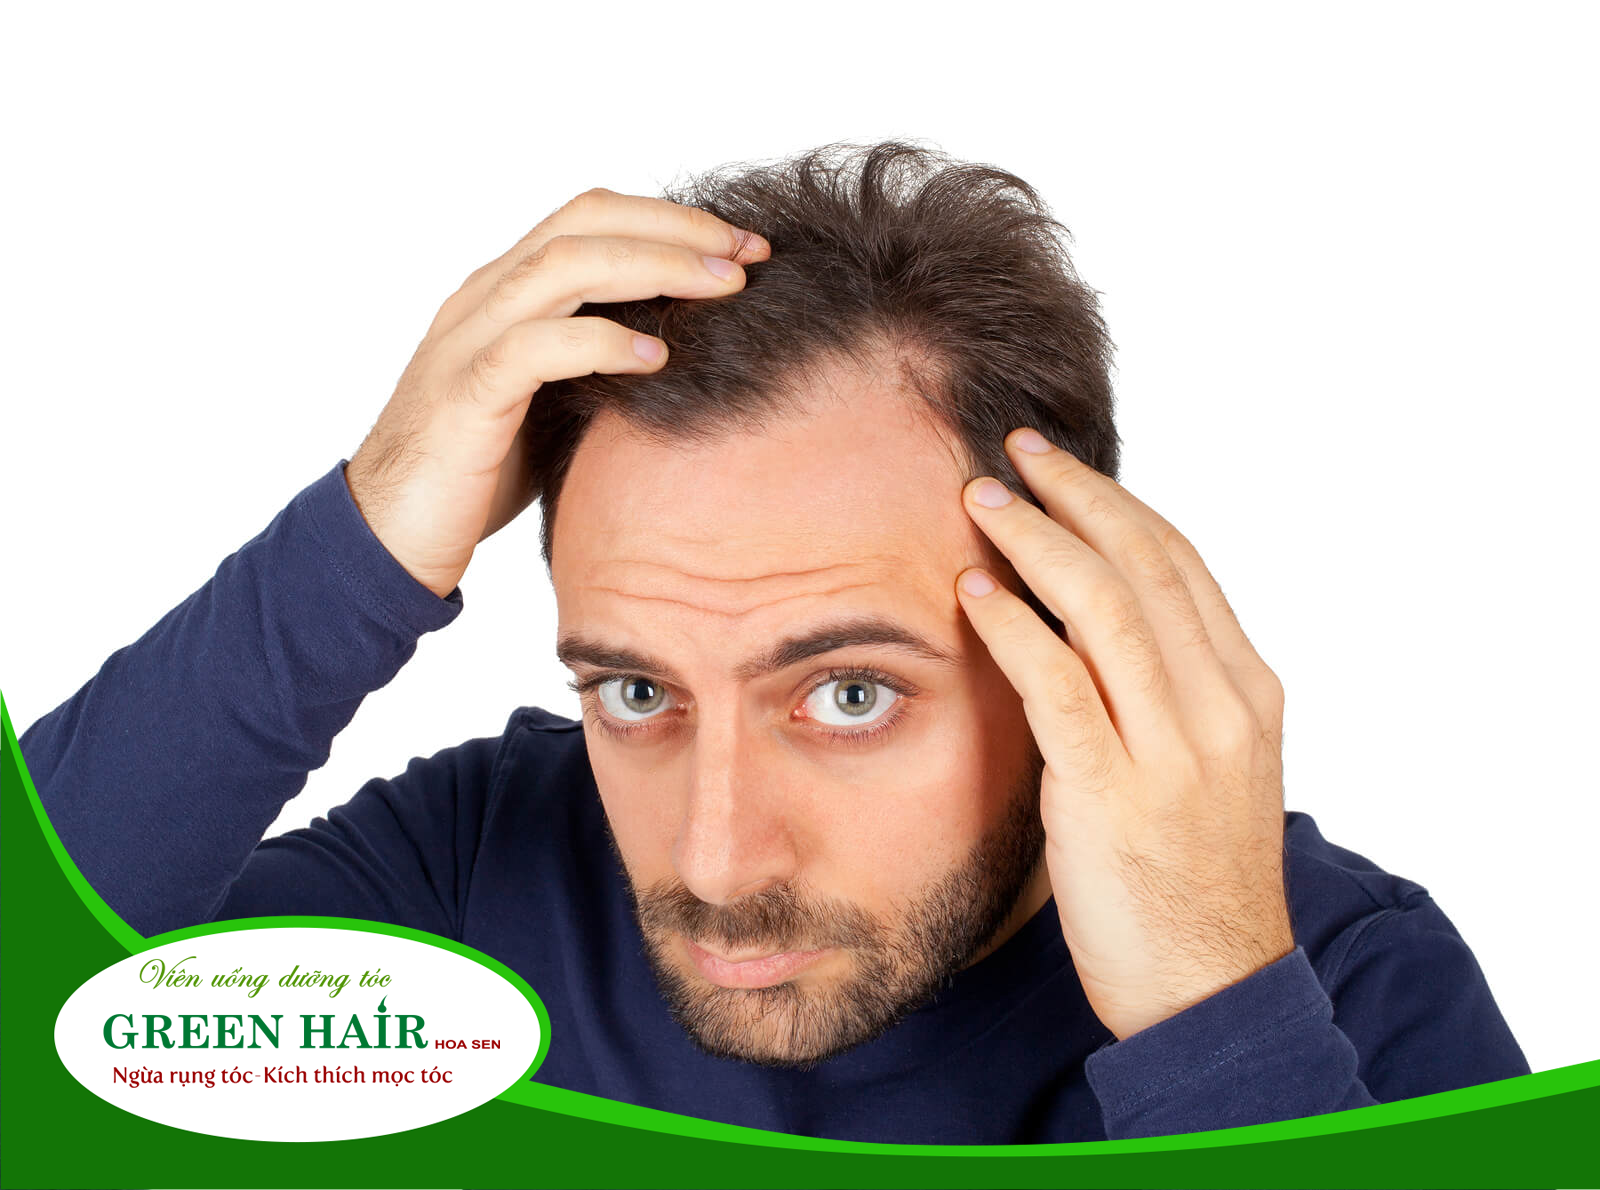 Hiện tượng rụng tóc ở nam giới thường xuất hiện ở tuổi 30